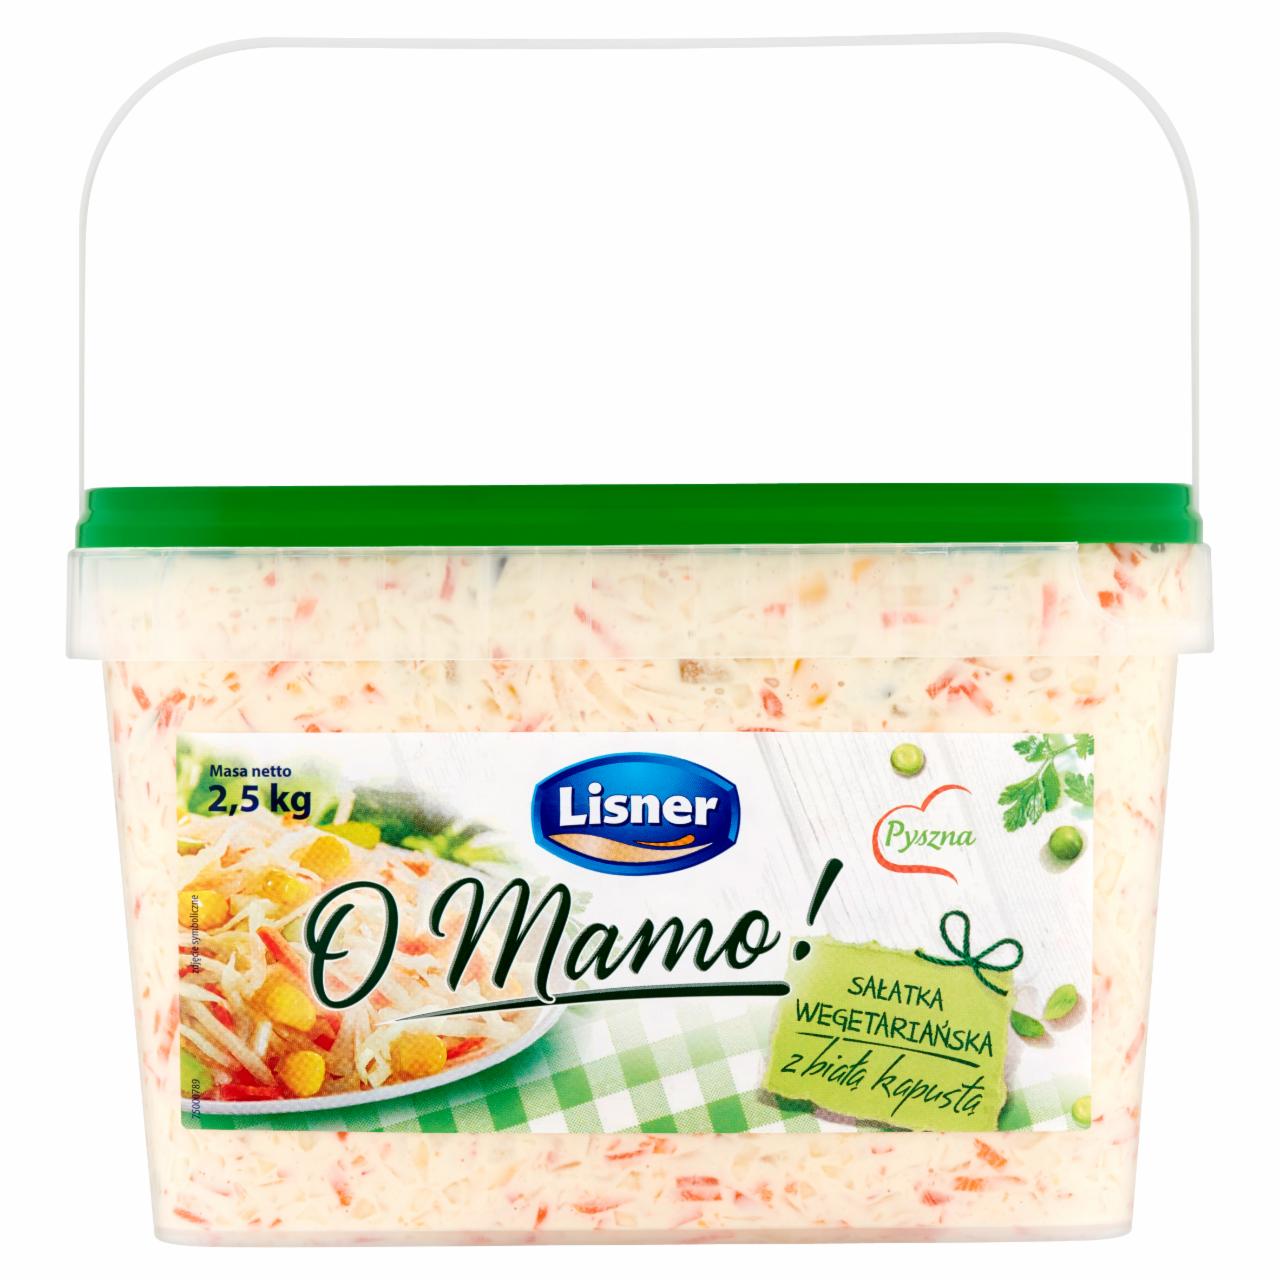 Zdjęcia - Lisner O Mamo! Sałatka wegetariańska z białą kapustą 2,5 kg